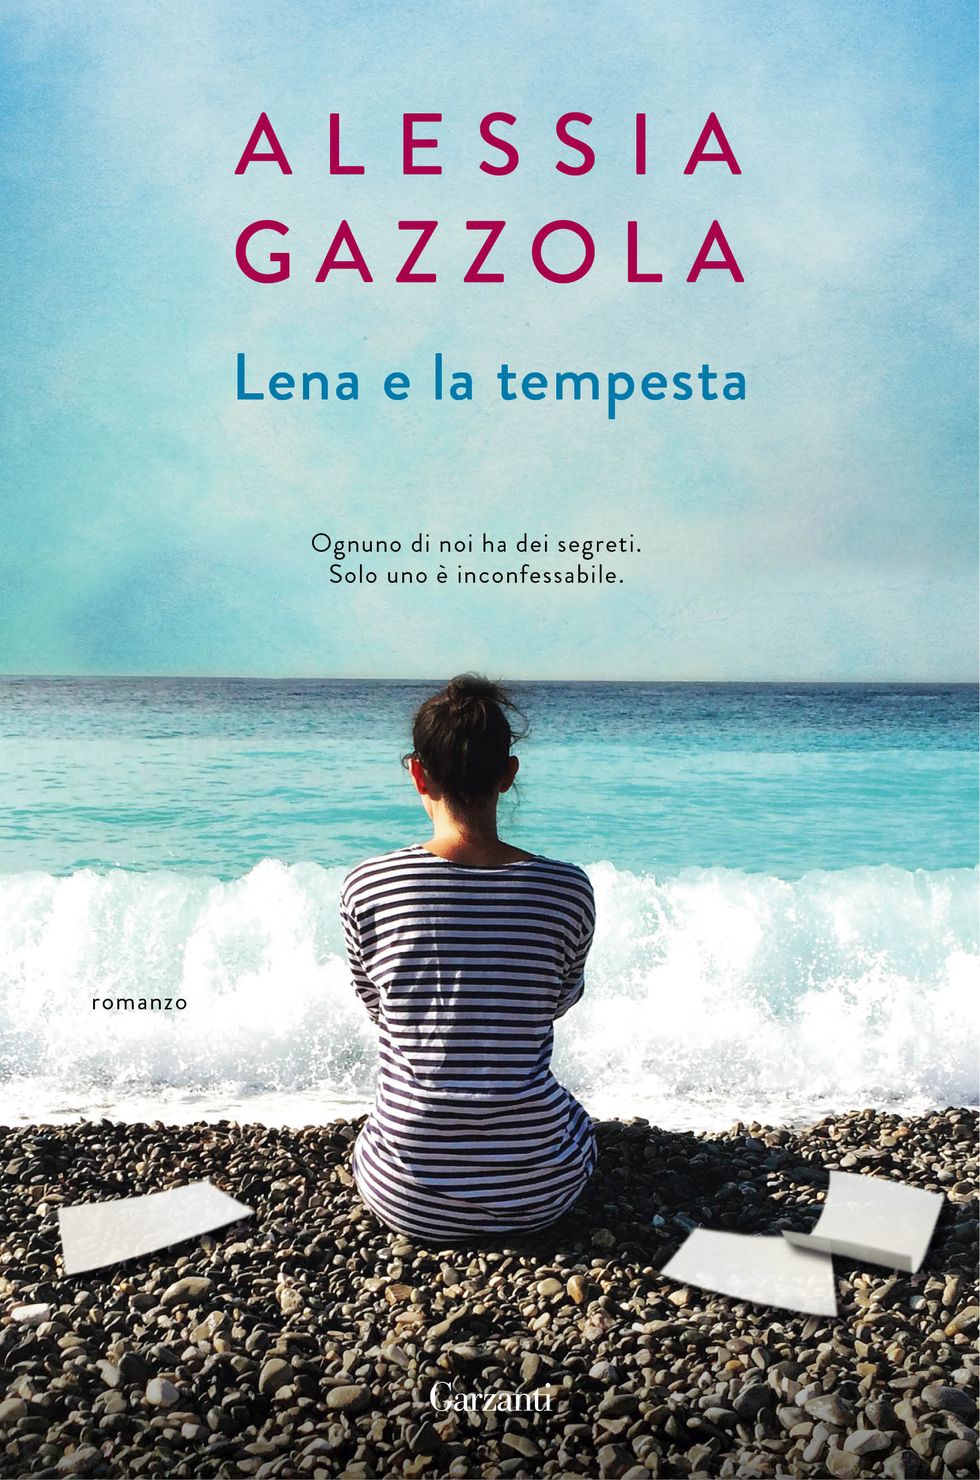 Sky, Book cover, Text, Poster, Ocean, Novel, Sea, Horizon, Summer, Calm, 